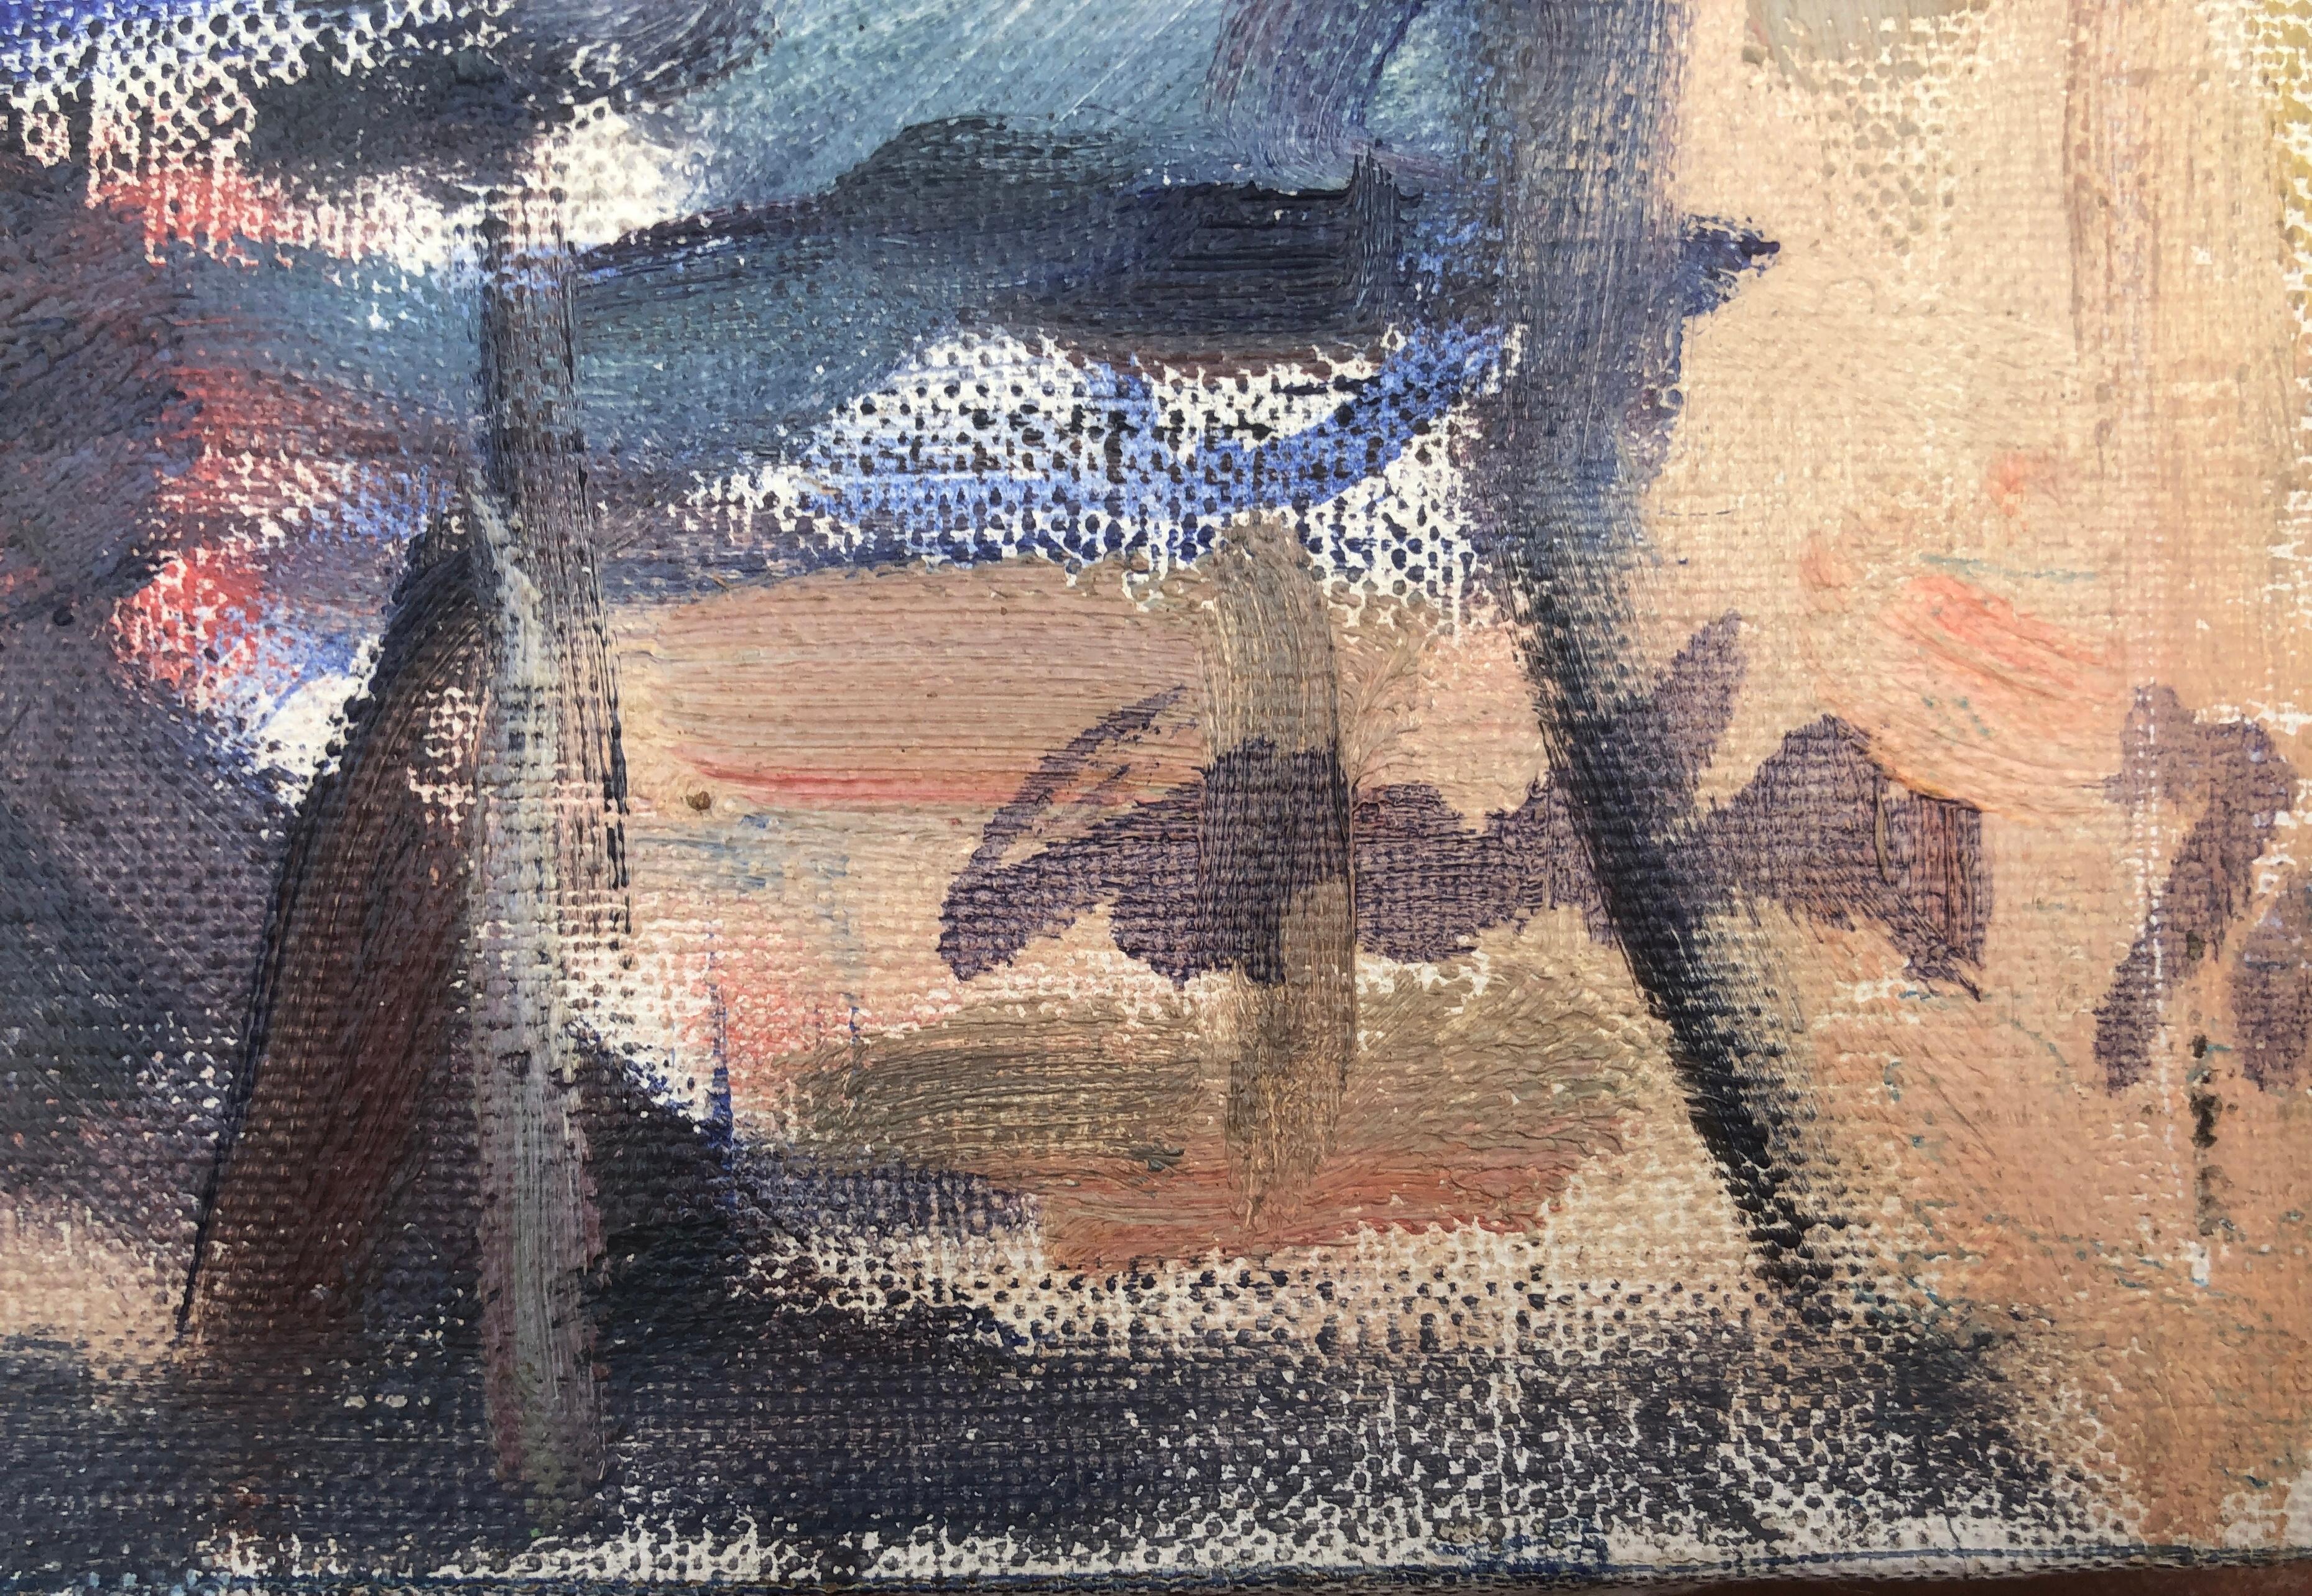 peritif auf der Terrasse der Bar, spanisches Gemälde in Öl auf Leinwand – Painting von Unknown